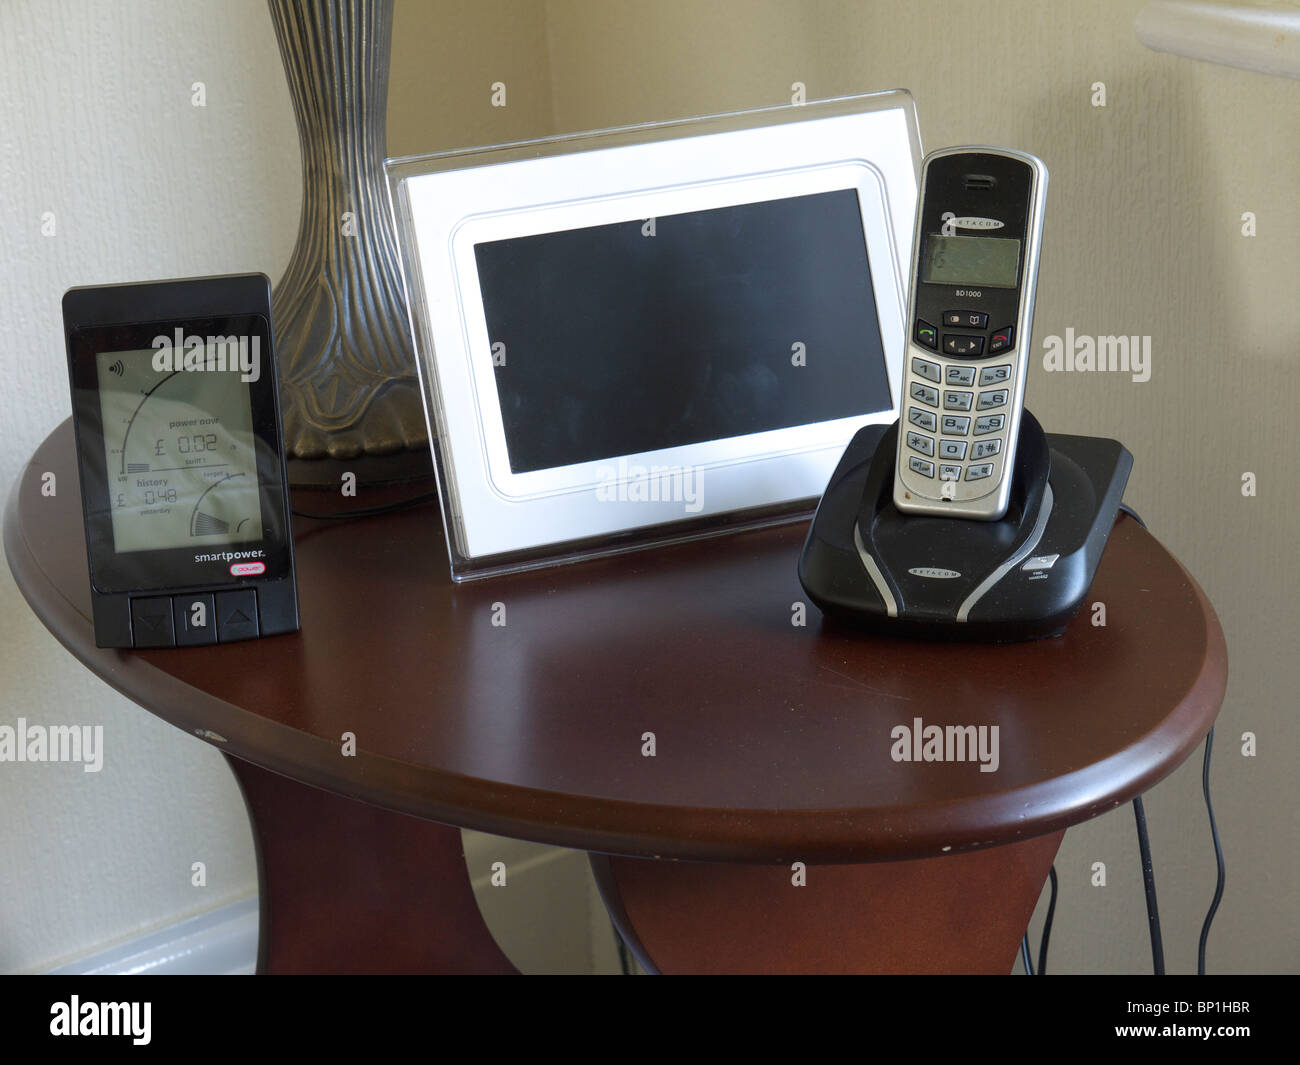 Home energia monitor sul tavolo con cornice fotografica digitale e telefono, Inghilterra, Regno Unito. Foto Stock